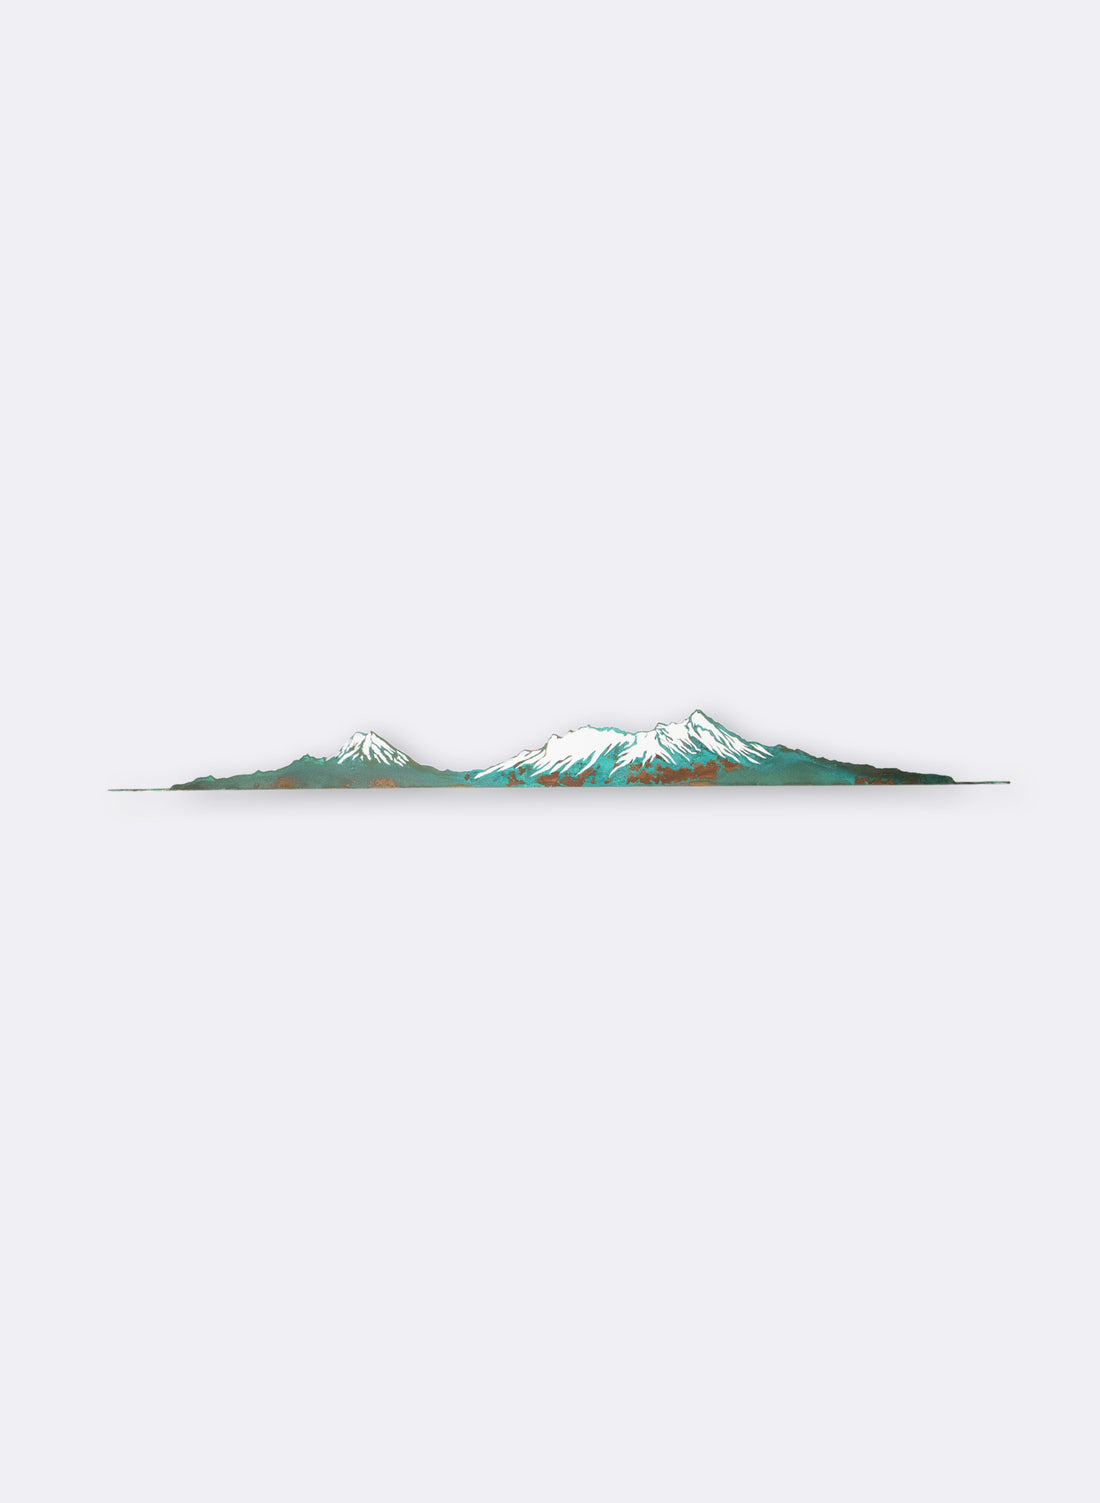 Winter Tongariro - Small